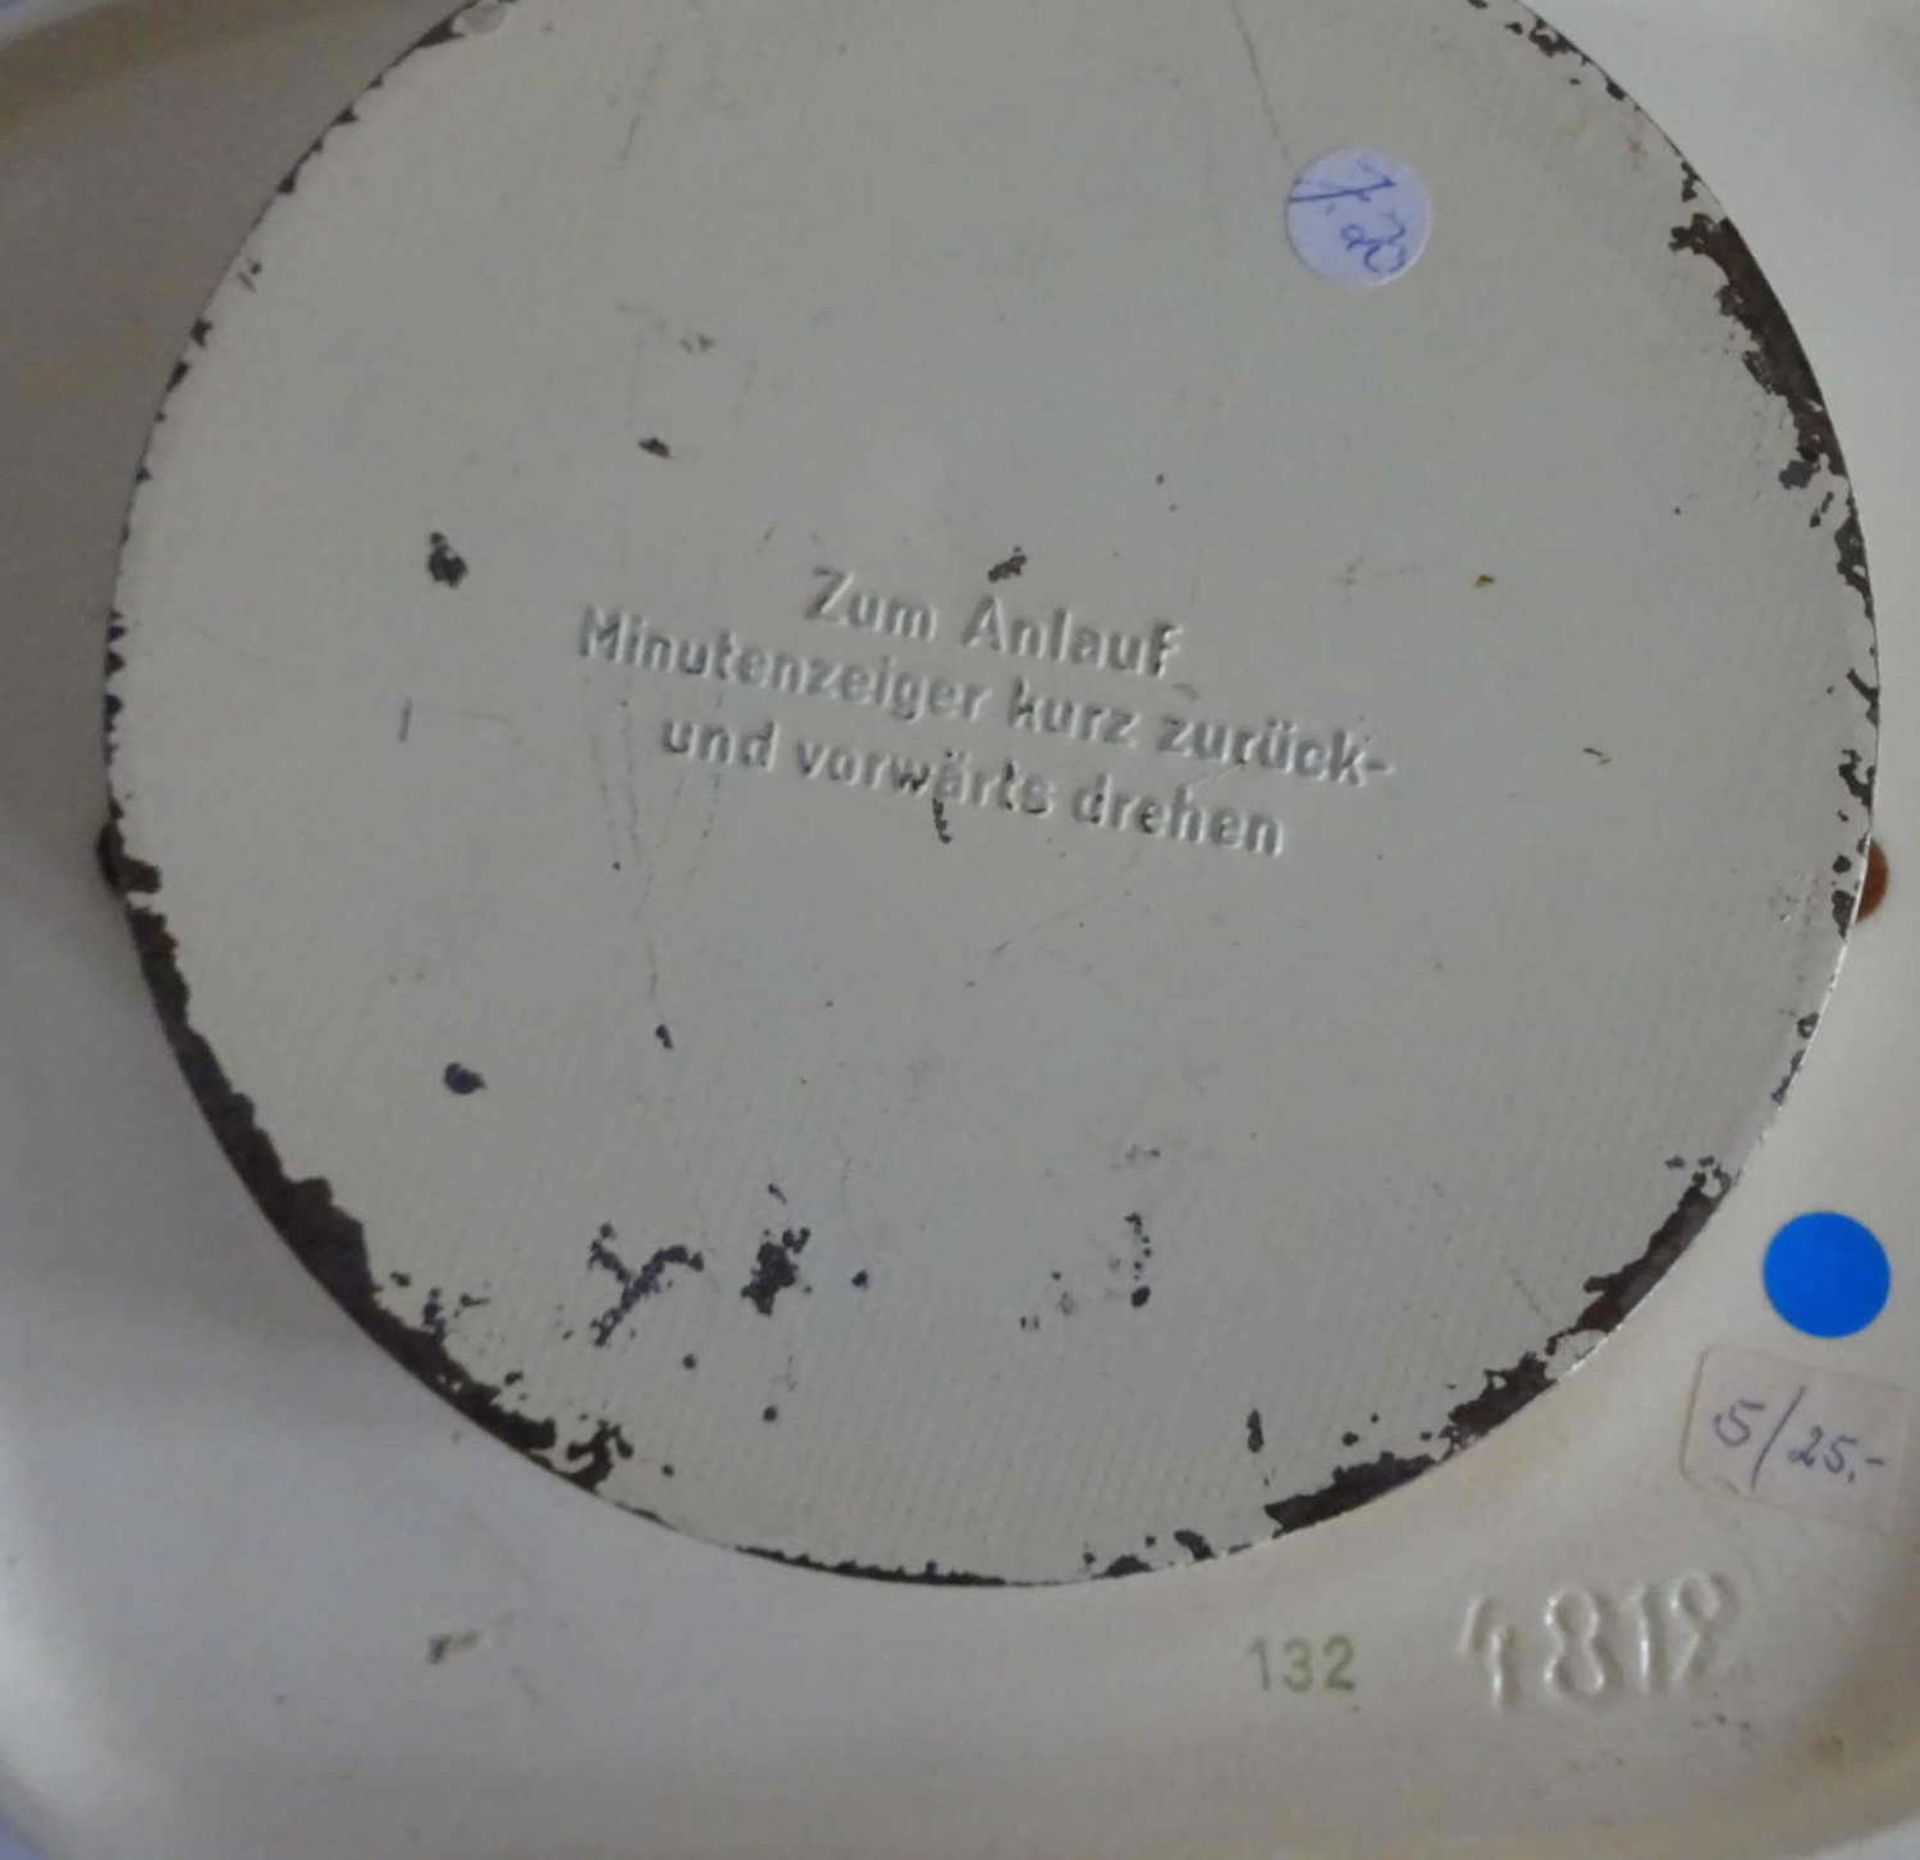 Keramik Wanduhr Garant Schwebe-Anker, Model 4818, Dekor 132. Mit Schlüsselaufzug, dieser nicht - Bild 2 aus 2